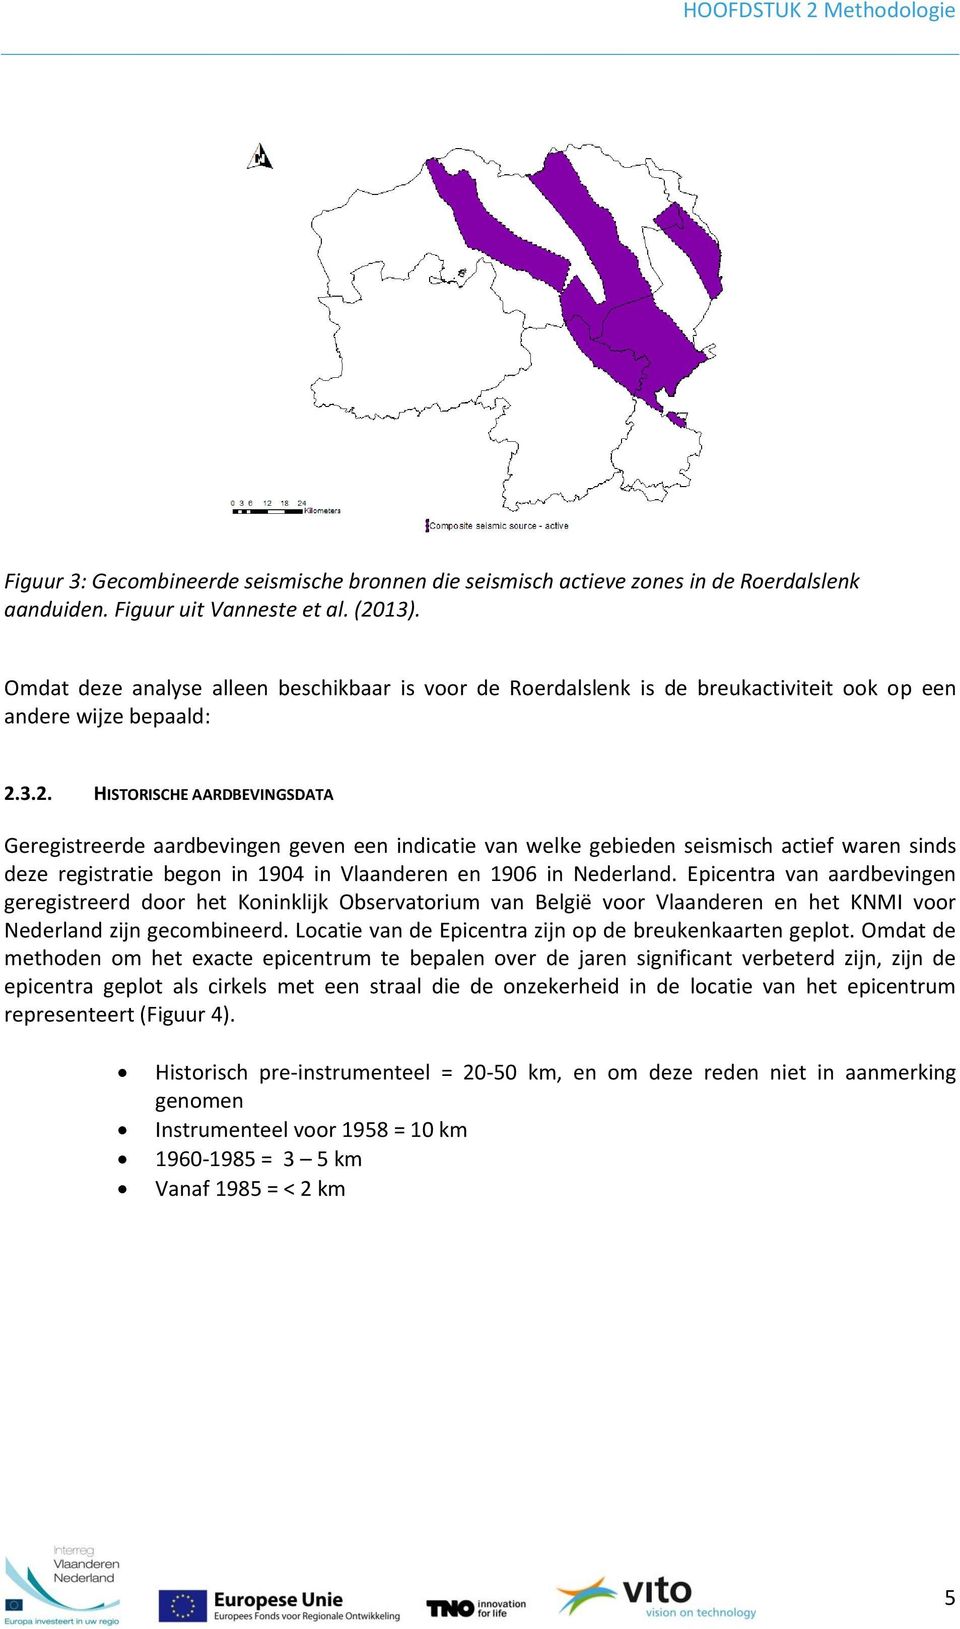 3.2. HISTORISCHE AARDBEVINGSDATA Geregistreerde aardbevingen geven een indicatie van welke gebieden seismisch actief waren sinds deze registratie begon in 1904 in Vlaanderen en 1906 in Nederland.